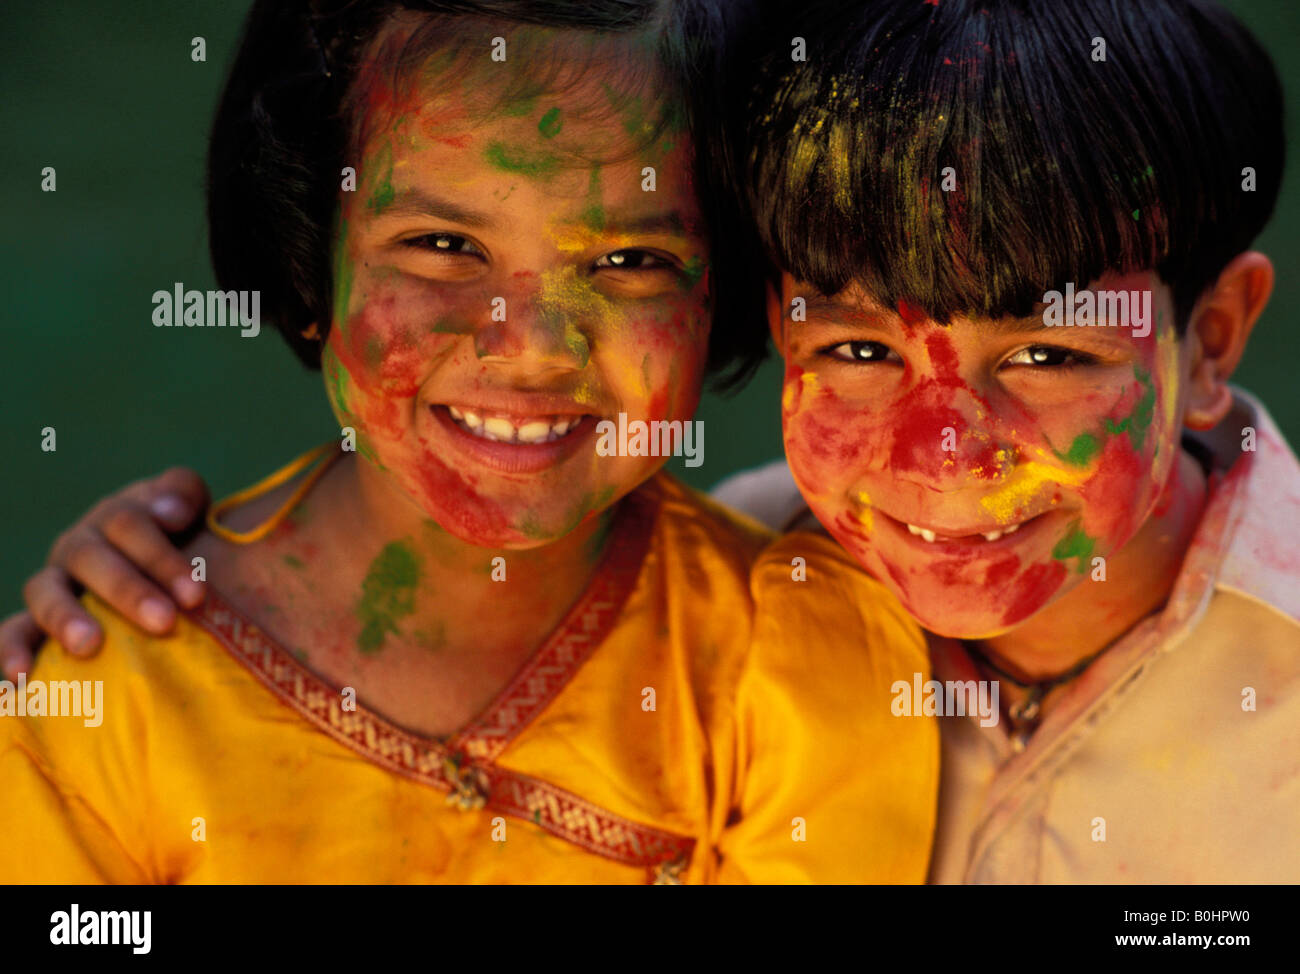 Un portrait des enfants avec de la peinture sur leurs visages, l'Inde. Banque D'Images